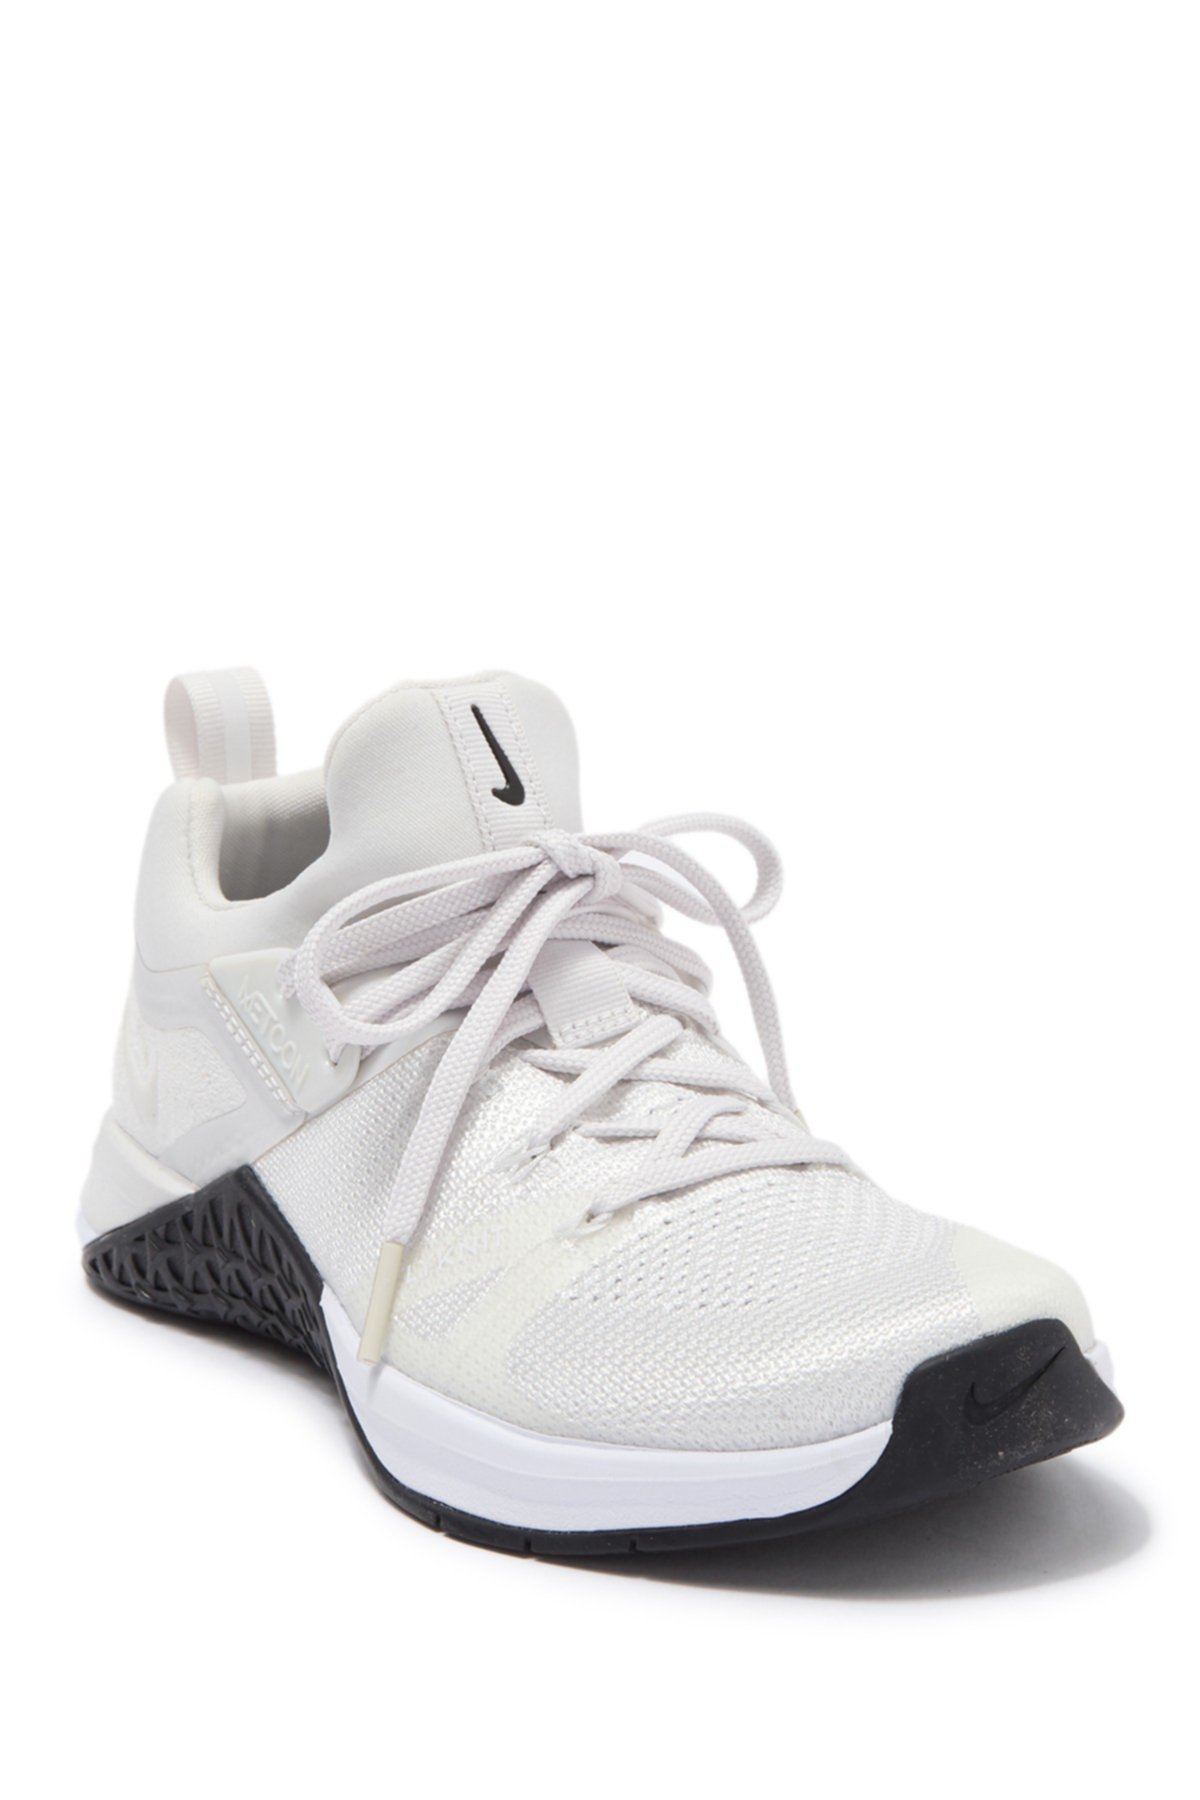 Меткон Flyknit 3 кроссовки Nike